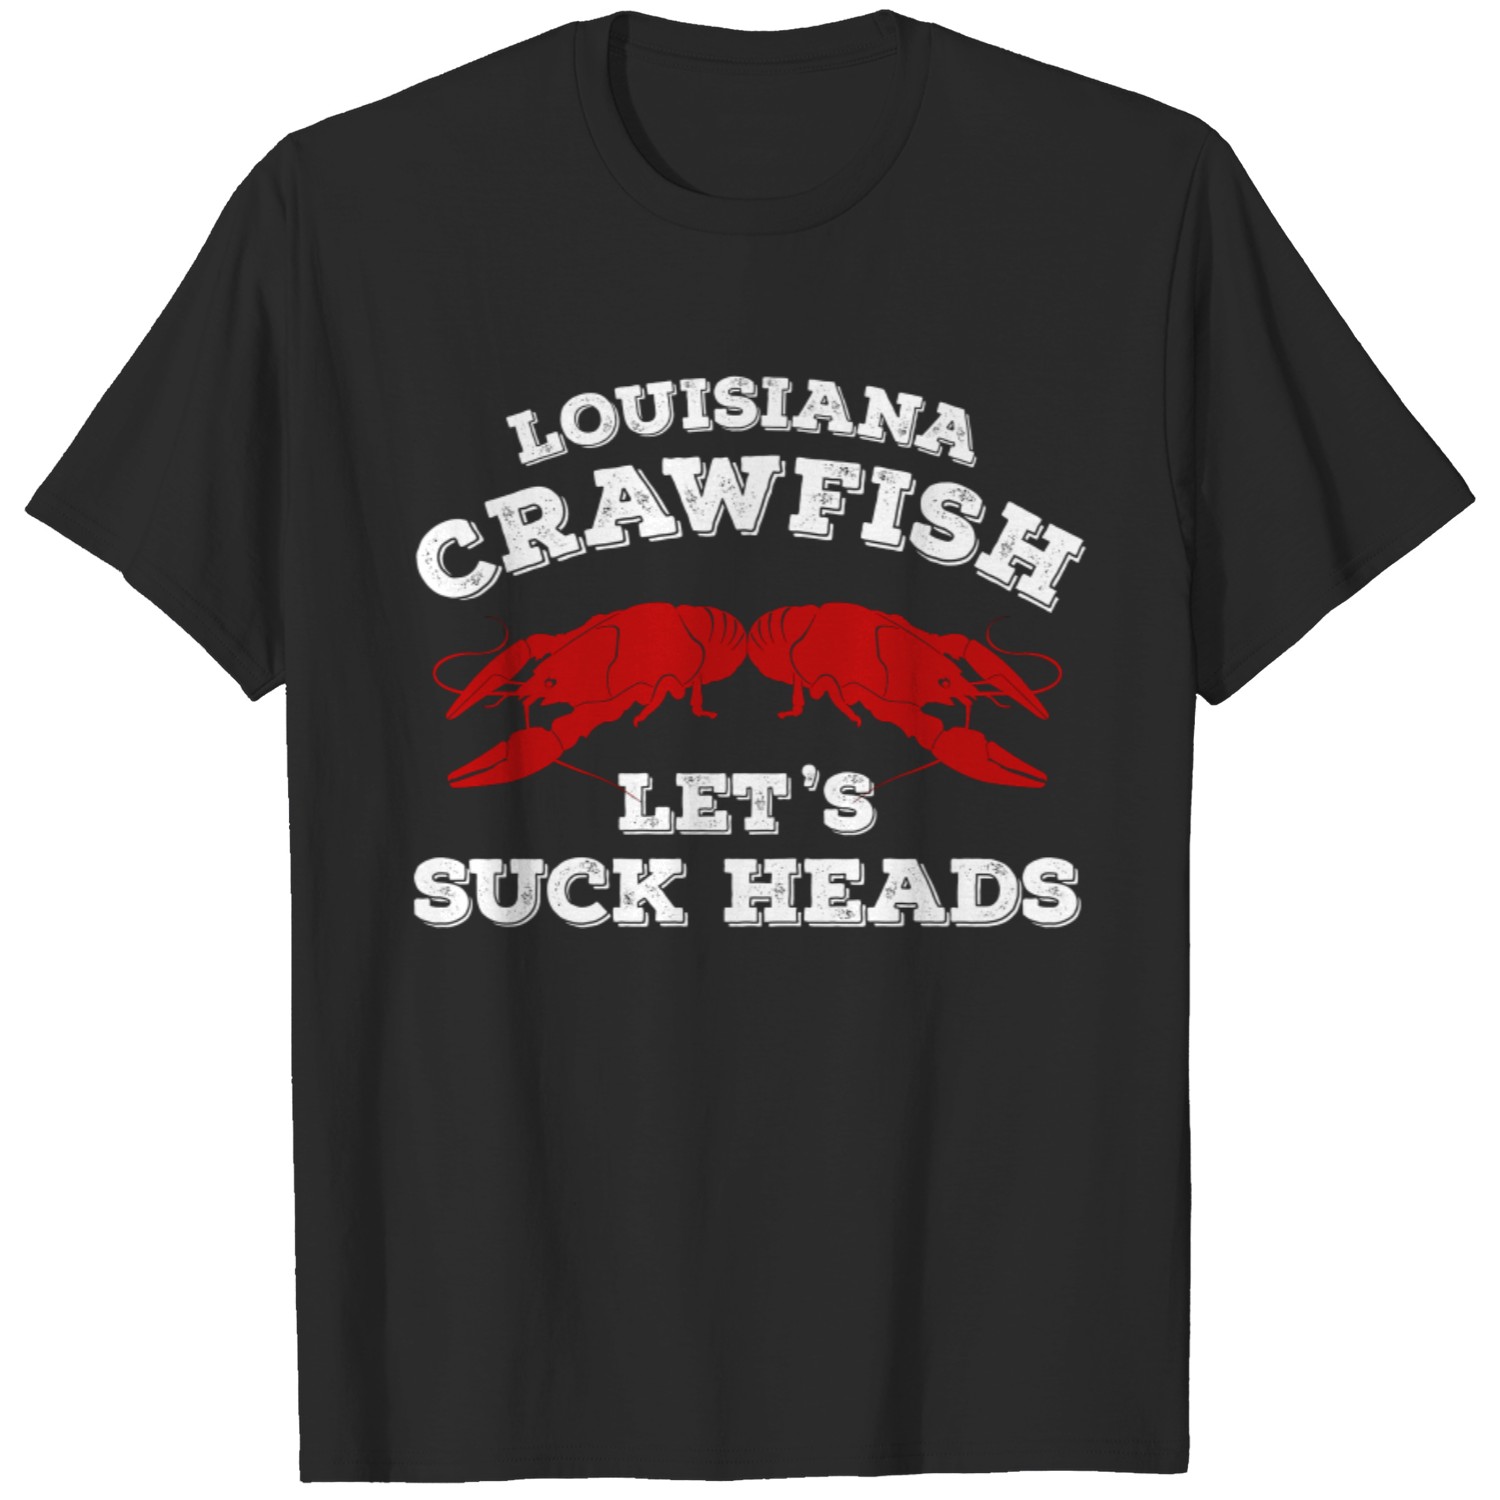 Red Shirts of Louisiana' Men's T-Shirt